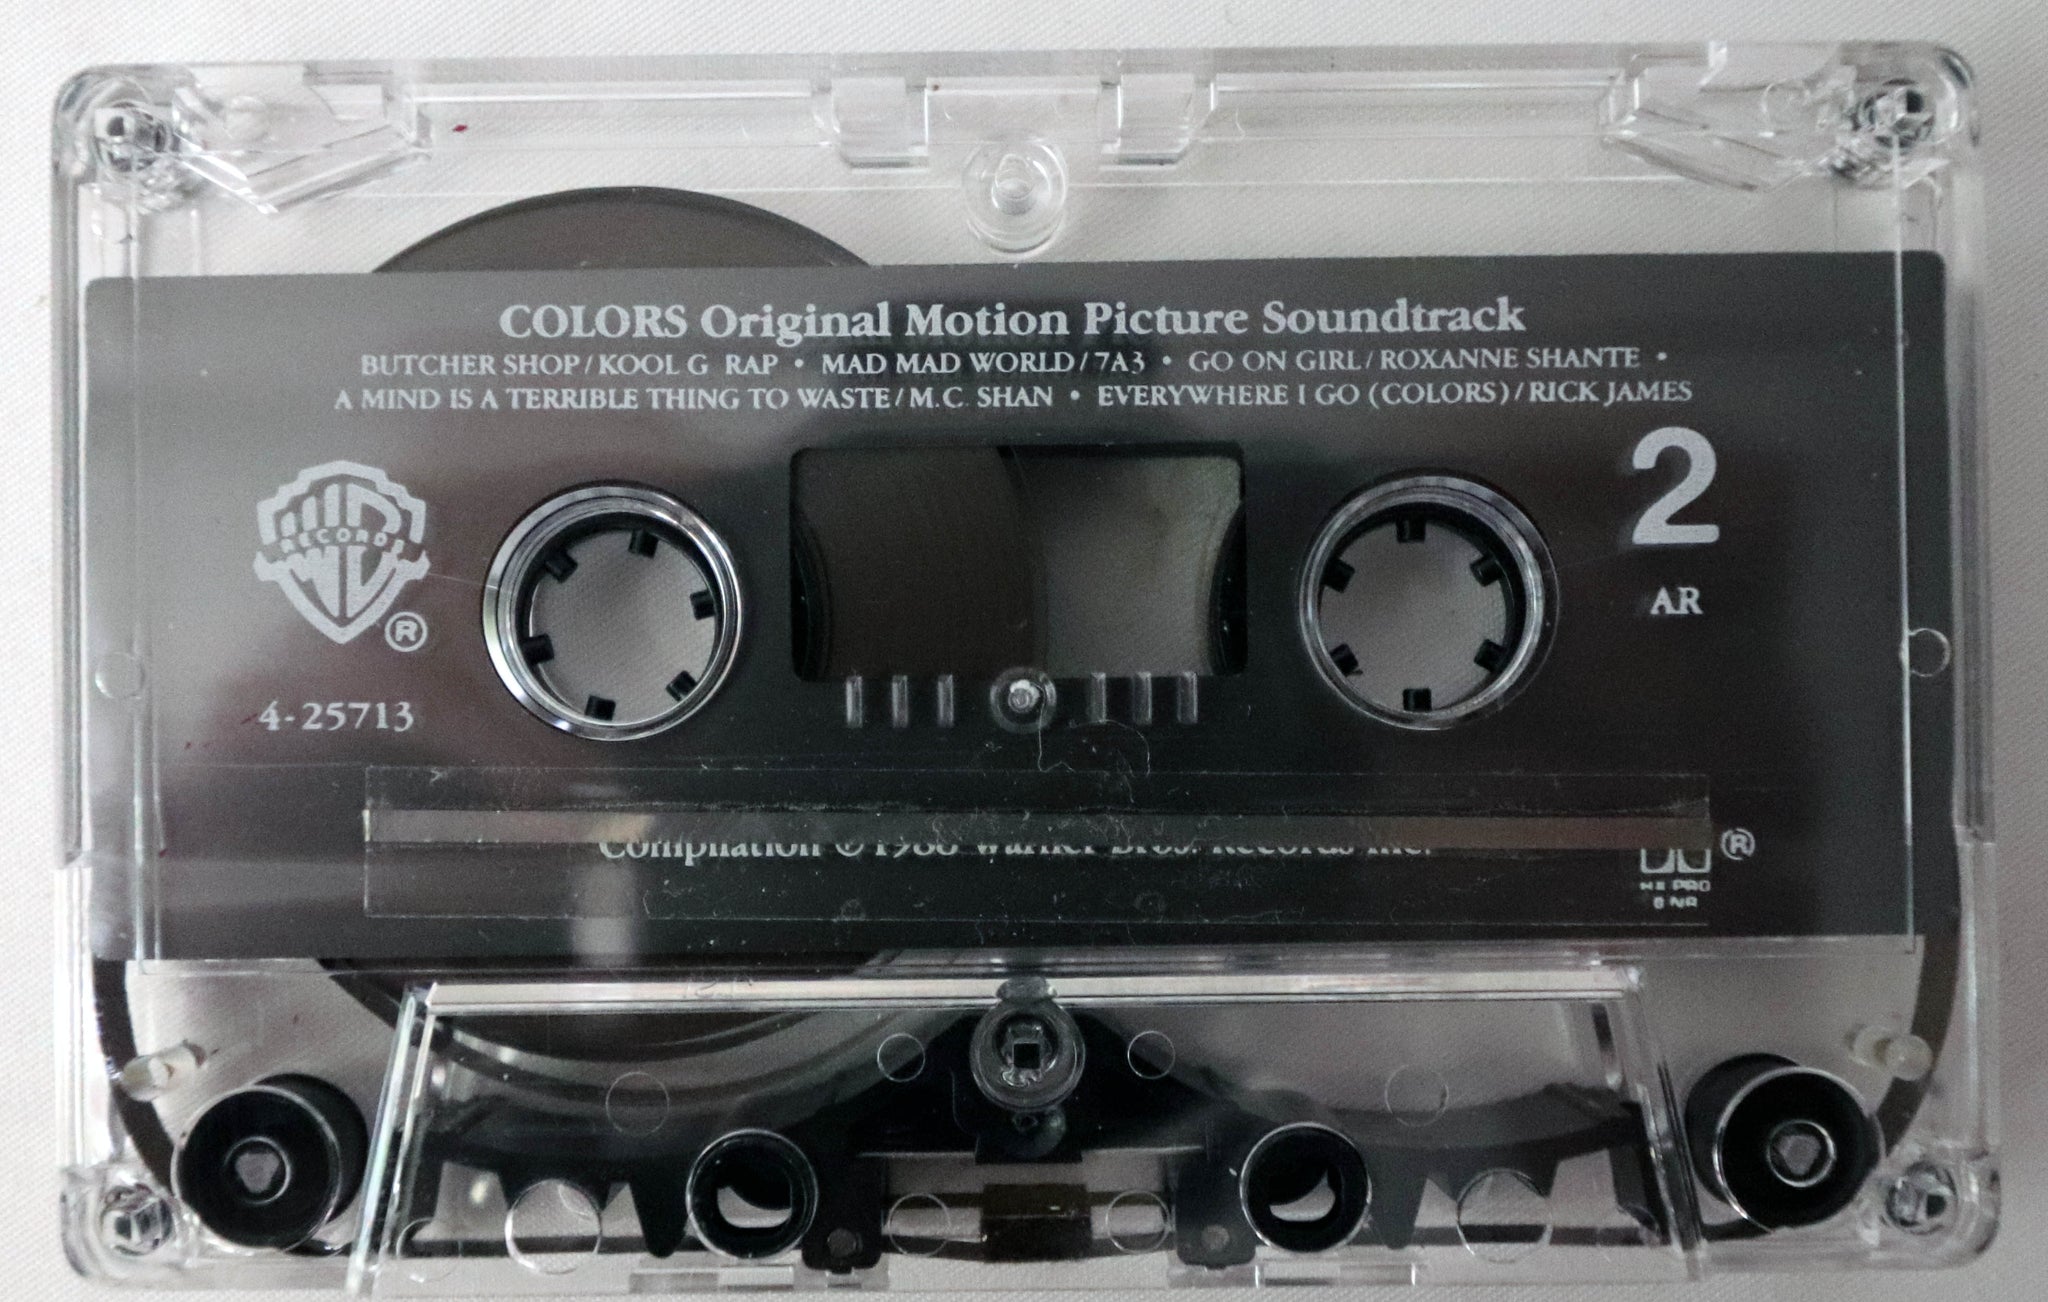 Music Cassette Tape - Hip-Hop / Soundtrack - Colors - Original